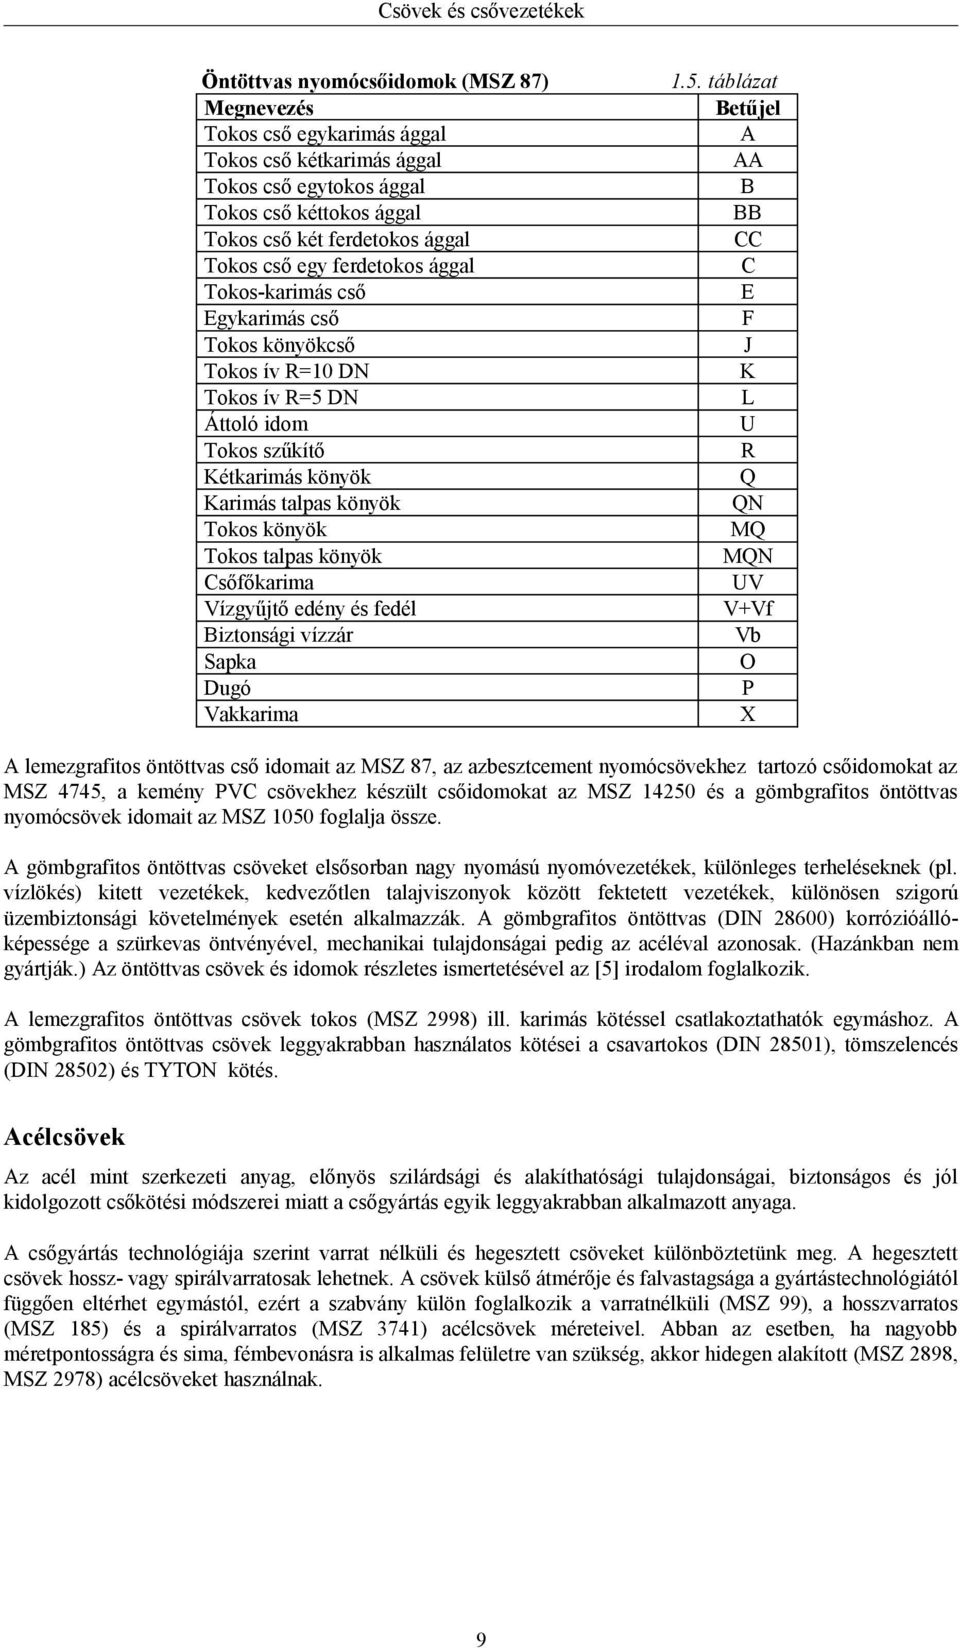 Csővezetékek és csővezetéki elemek. Összeállította: Juhász György főiskolai  adjunktus - PDF Free Download